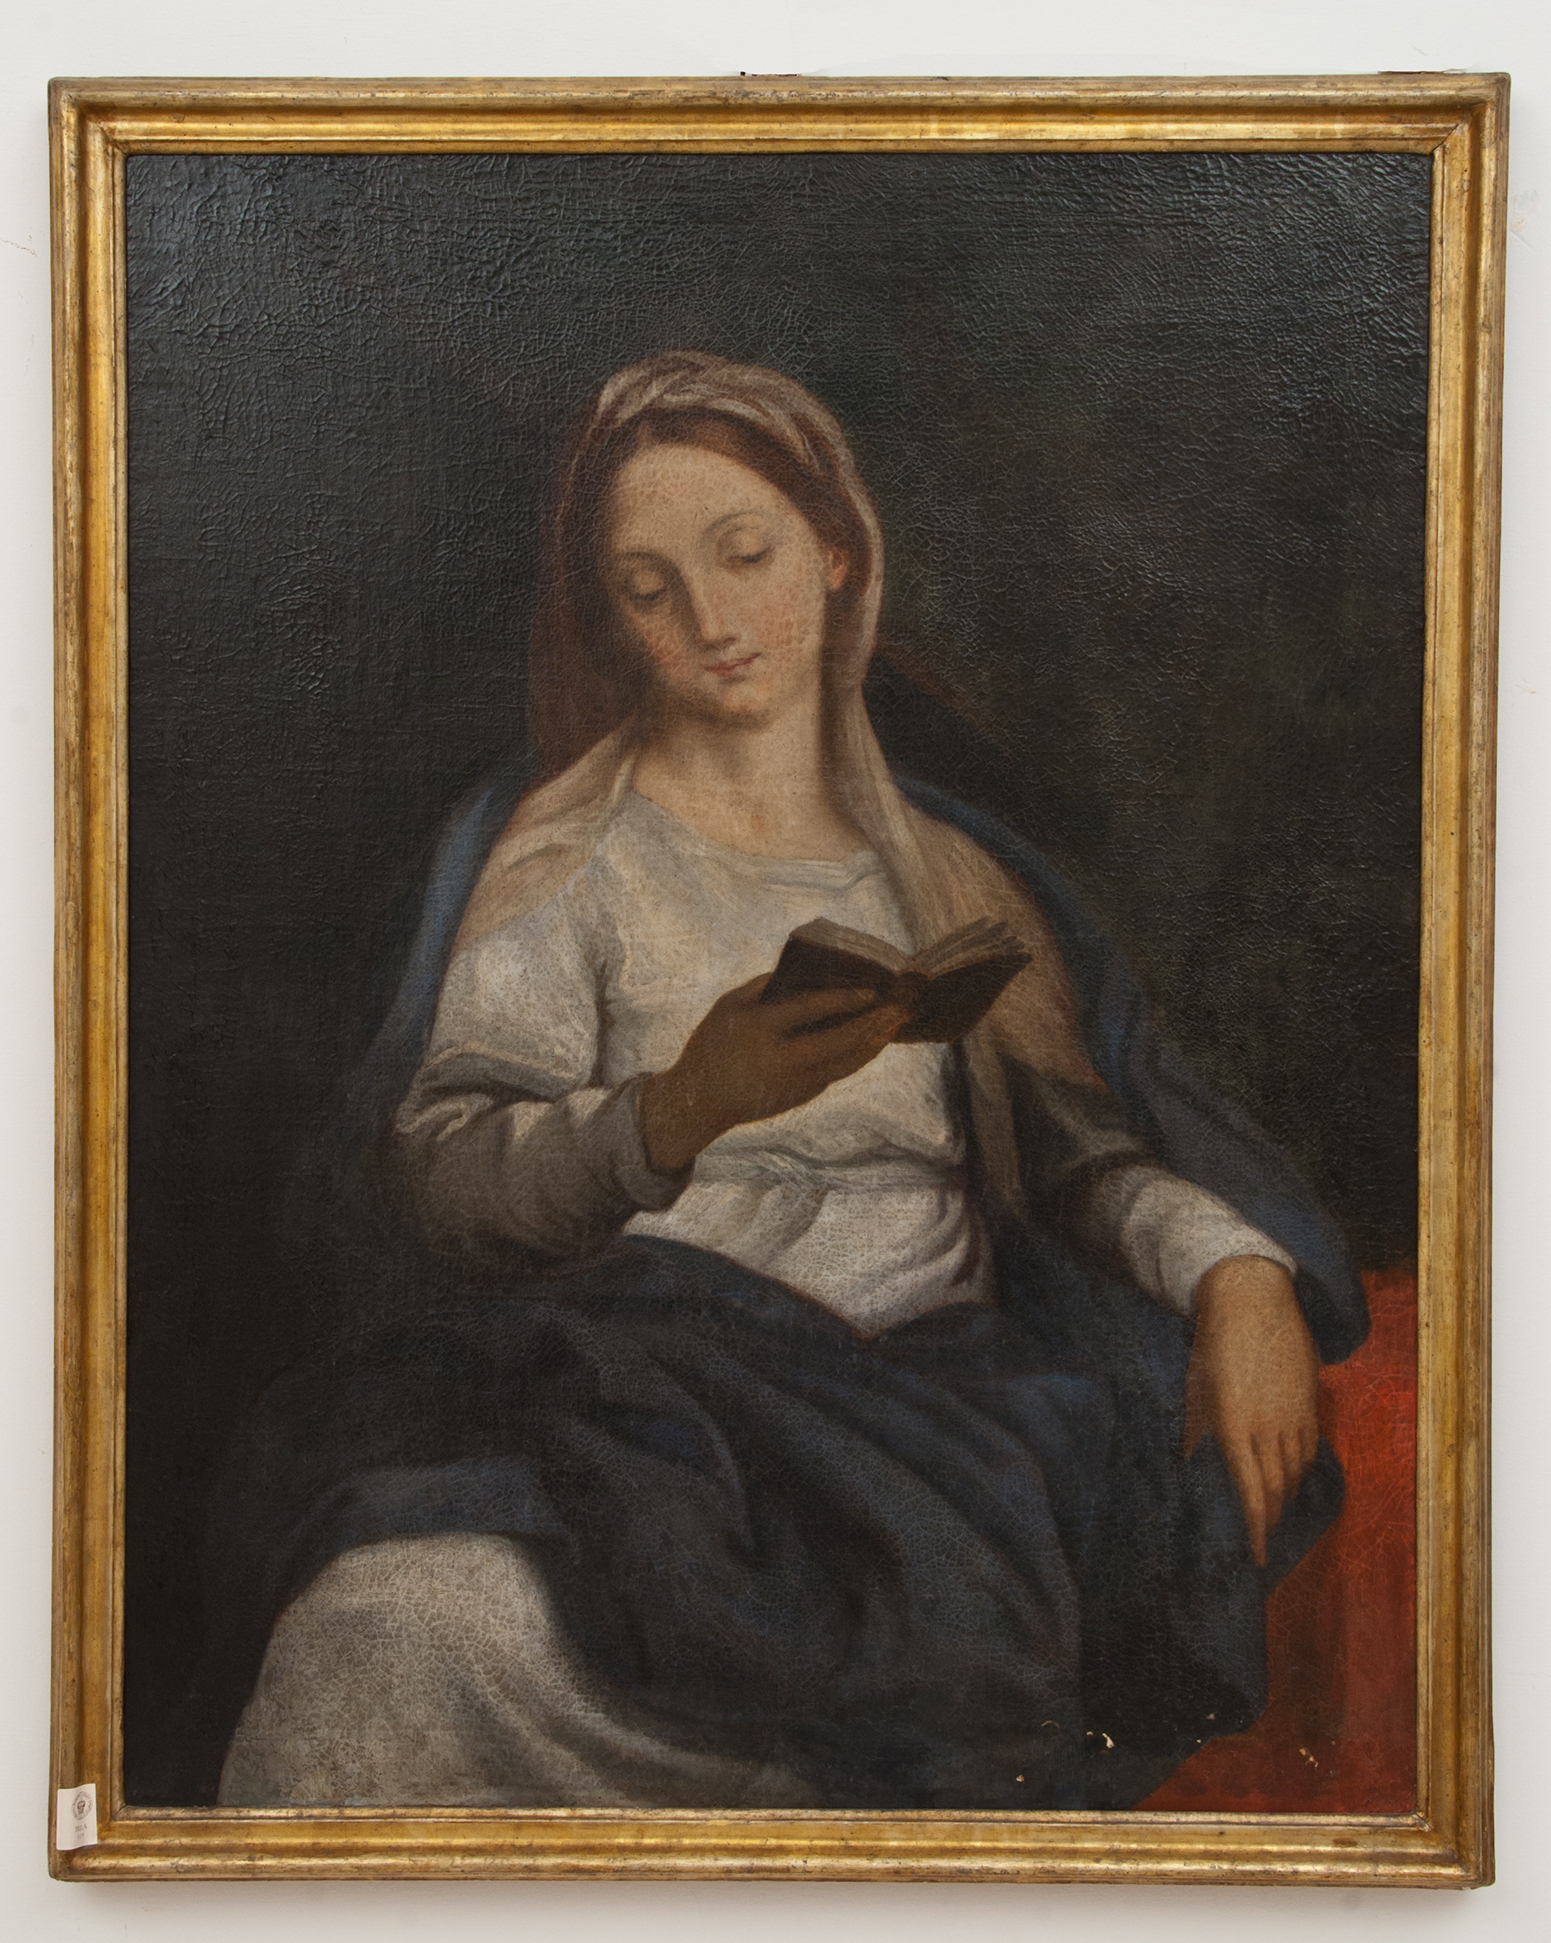 MADONNA DELLA LECTIO (dipinto - dipinto su tela, opera isolata) di Ignoto (maniera) - ambito Italia meridionale (XVIII)